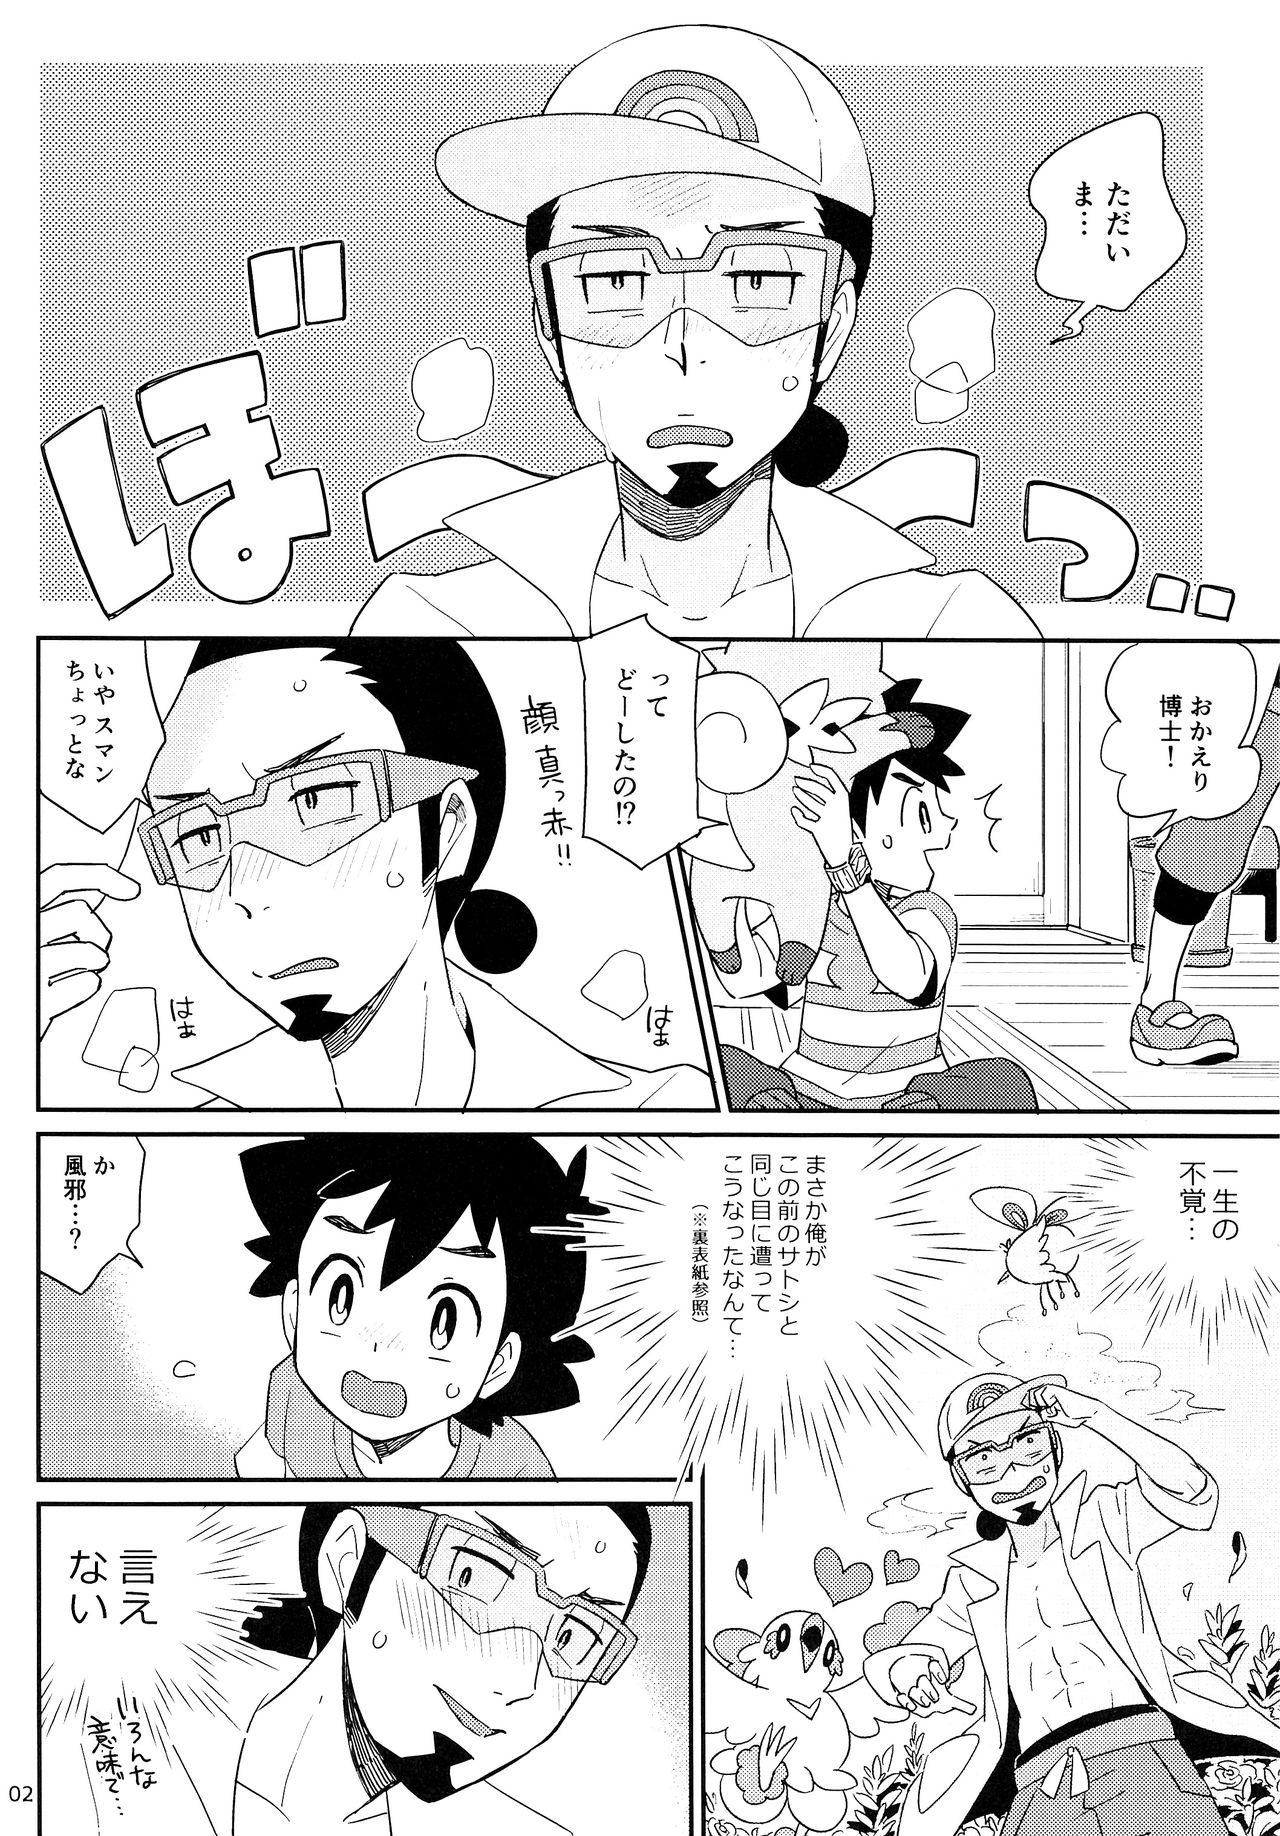 Assfingering Okaerinasai no Sono Ato wa - Pokemon Gordibuena - Page 2